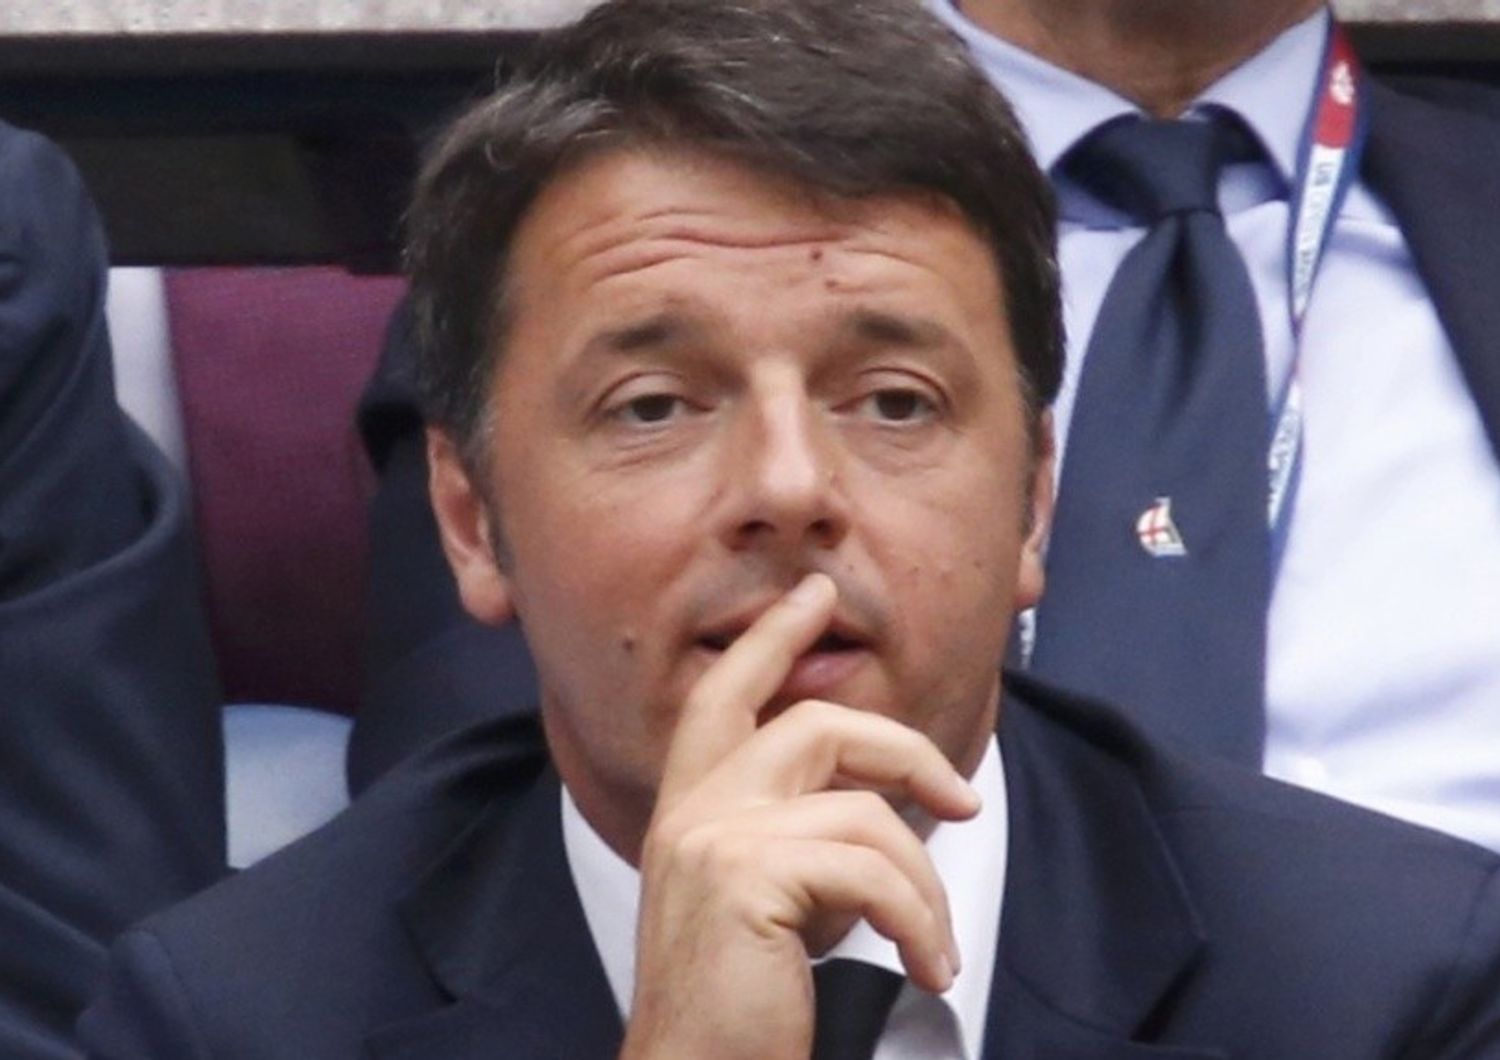 Riforme: Renzi, abbiamo i numeri"Tiro dritto, e' in gioco la ripresa"